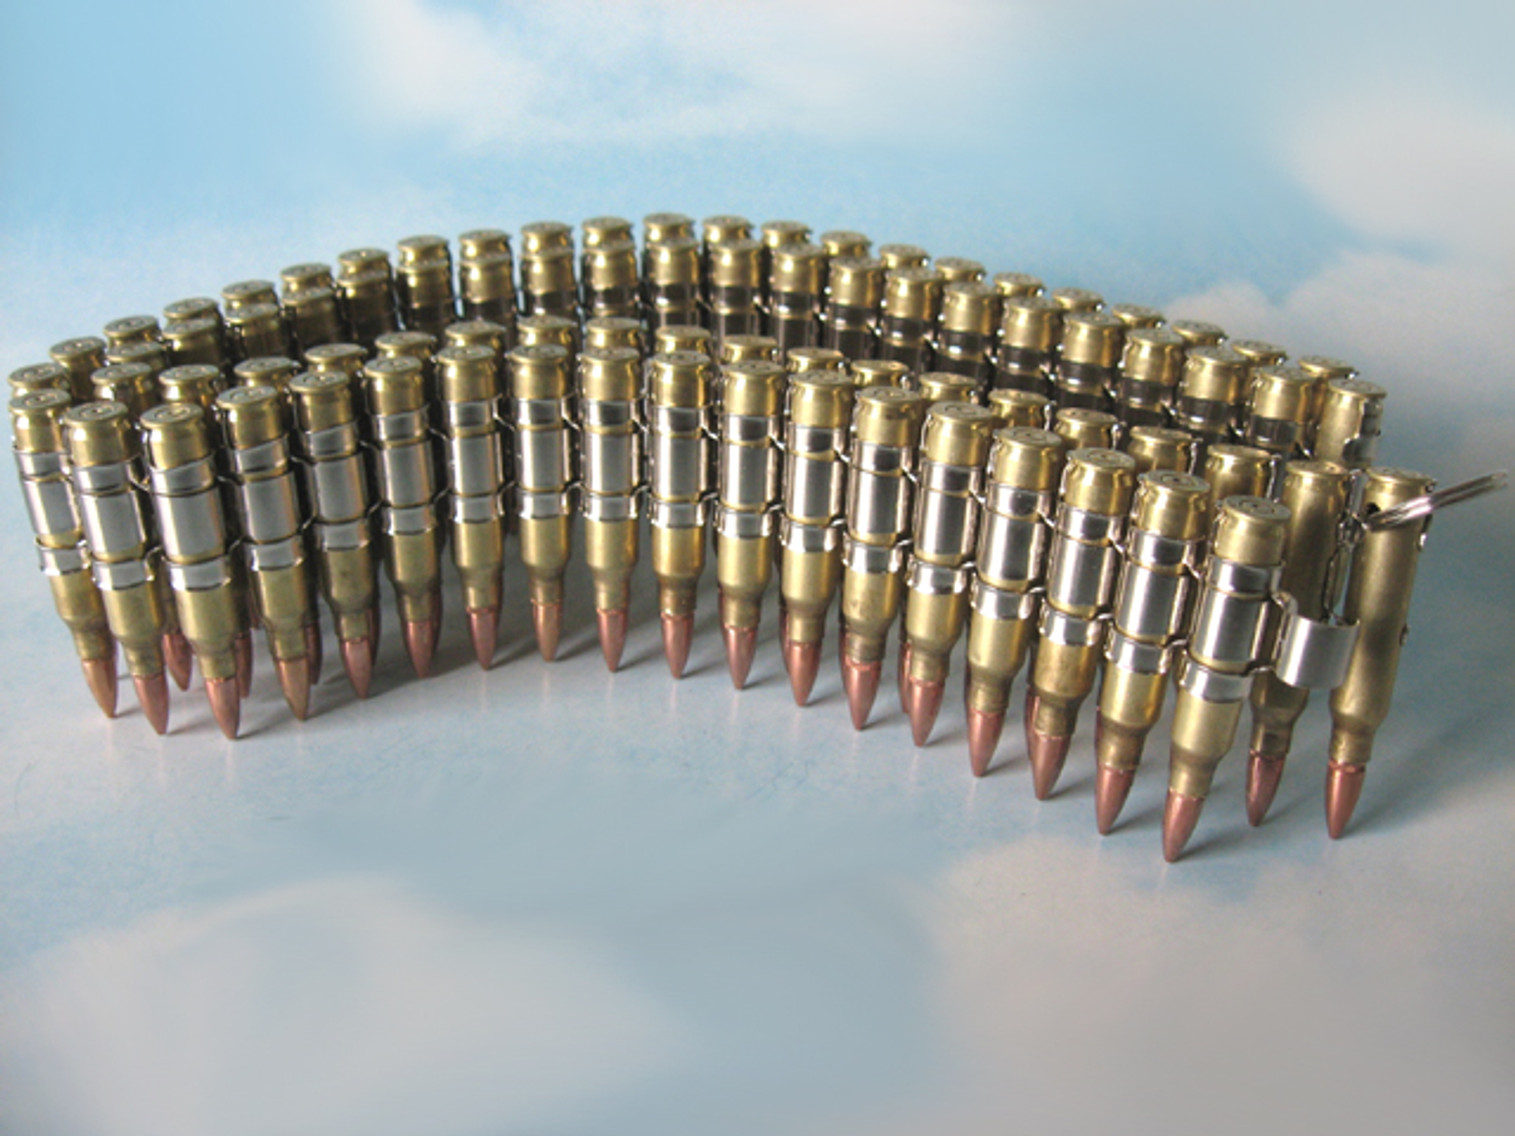 Bullet Belt 5.56 mm - Brass Casings & Nickel Links